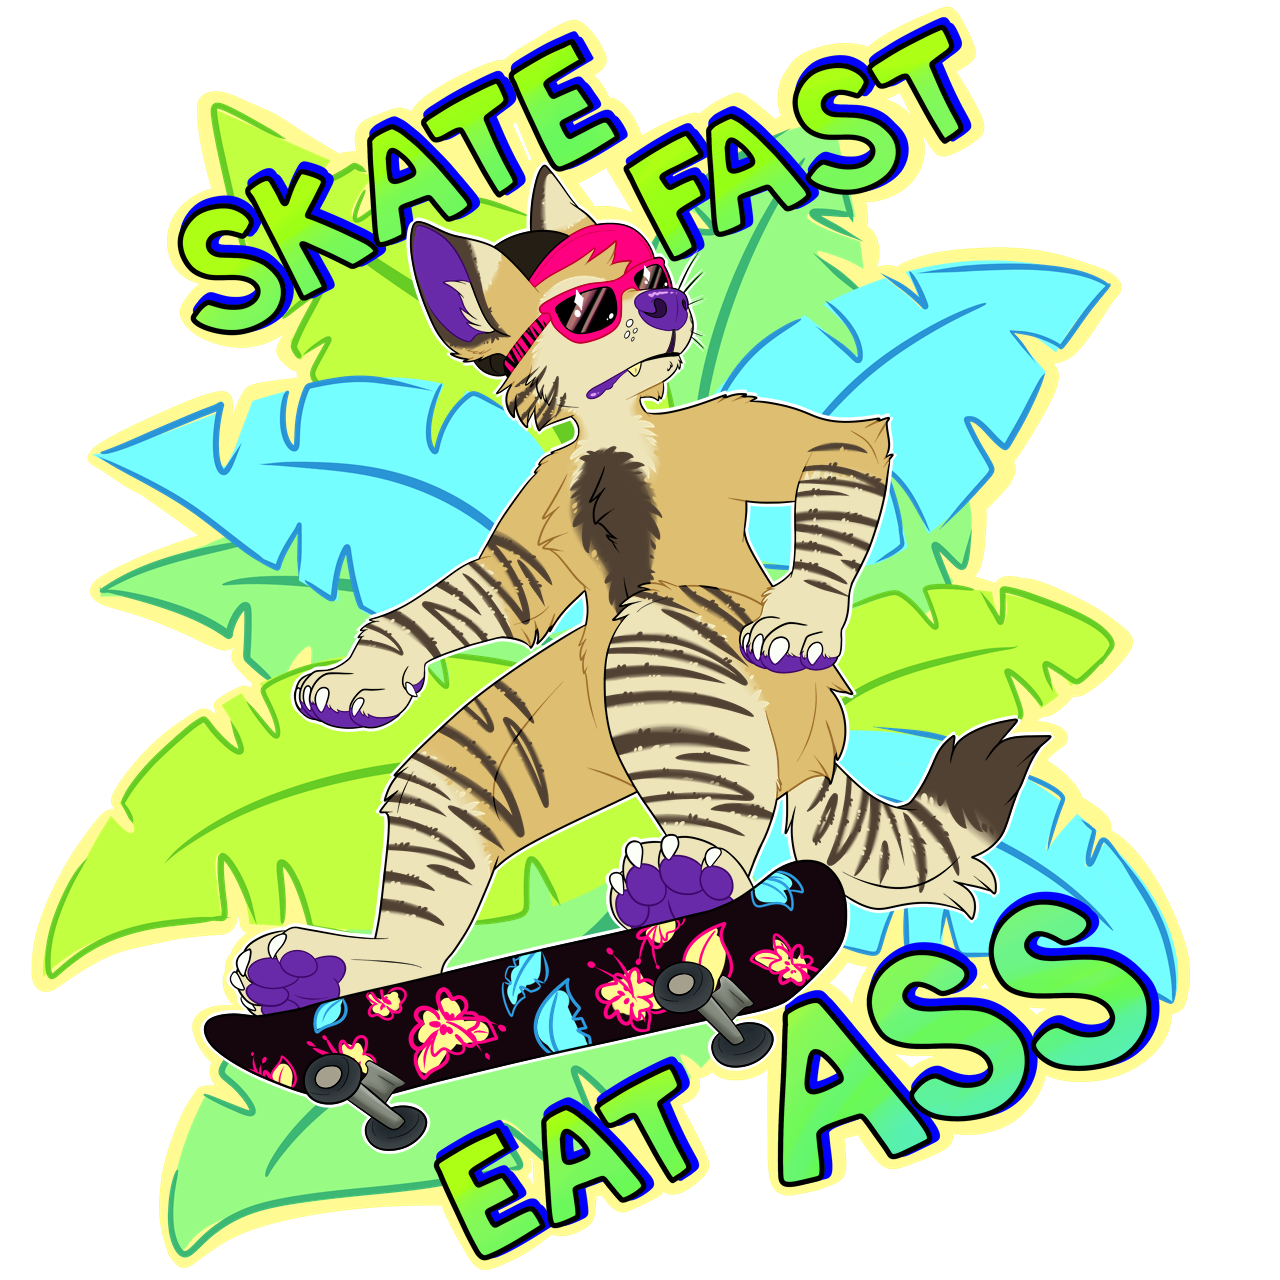 Skate fast eat ass